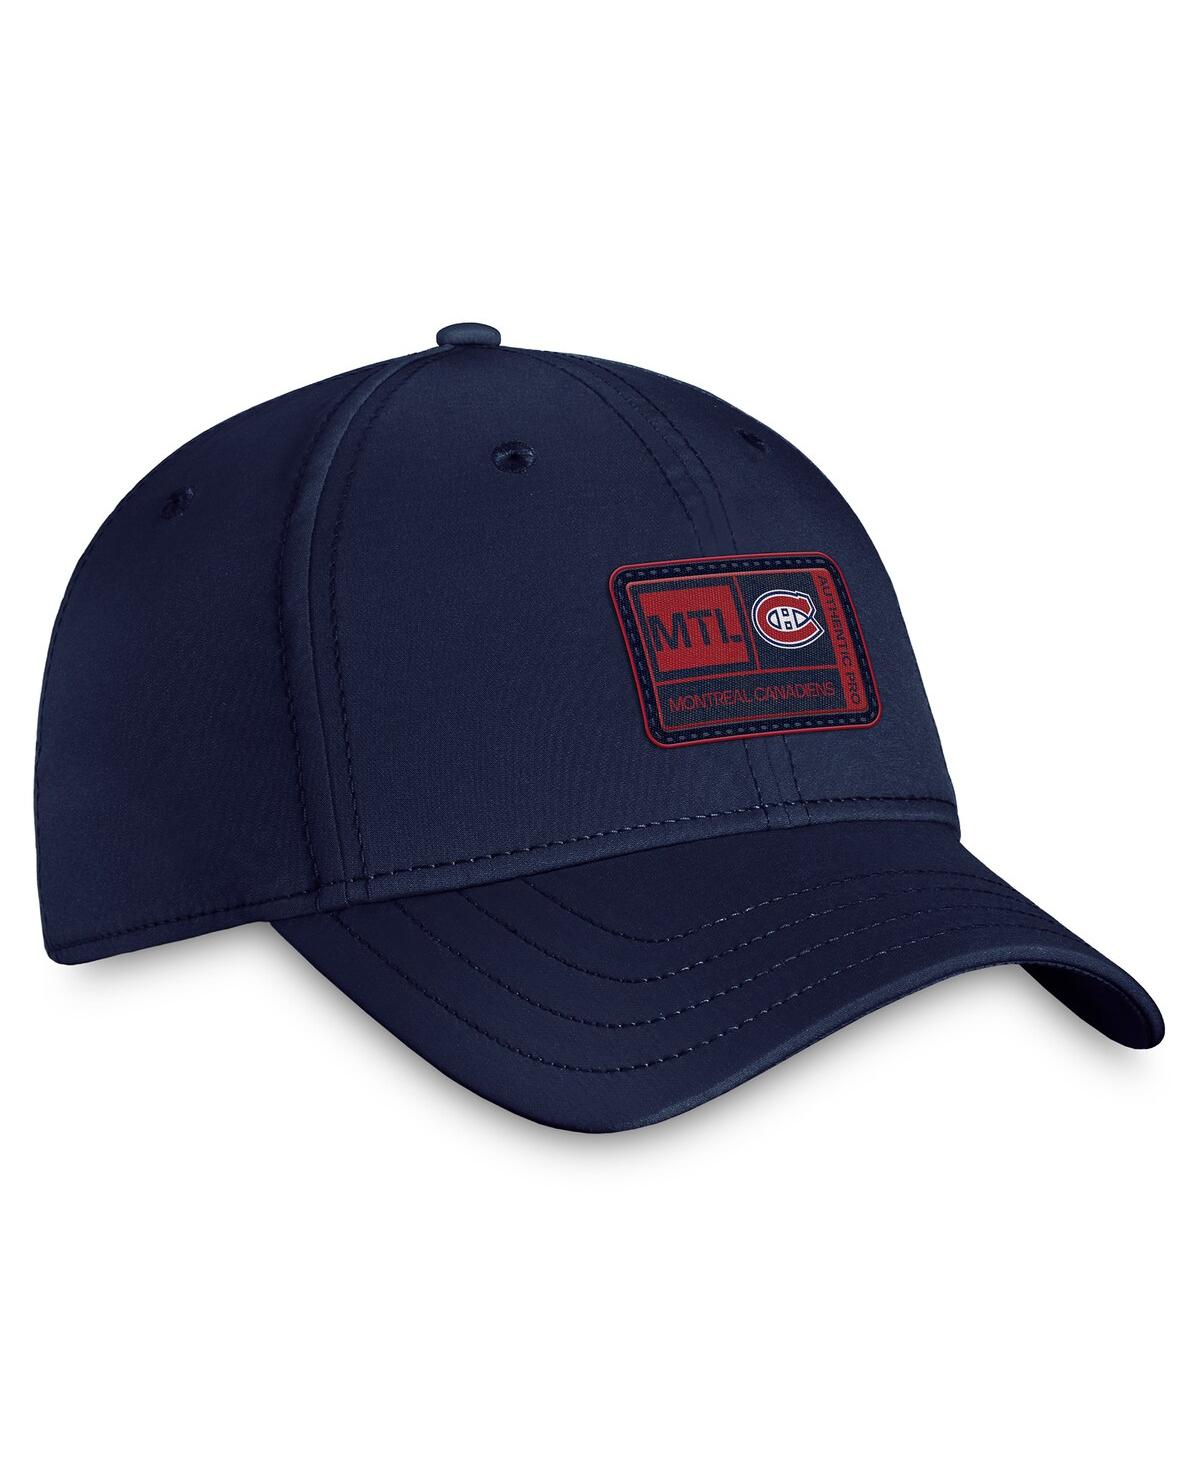 Shop Fanatics Men's  Navy Montreal Canadiens Authentic Pro Training Camp Flex Hat